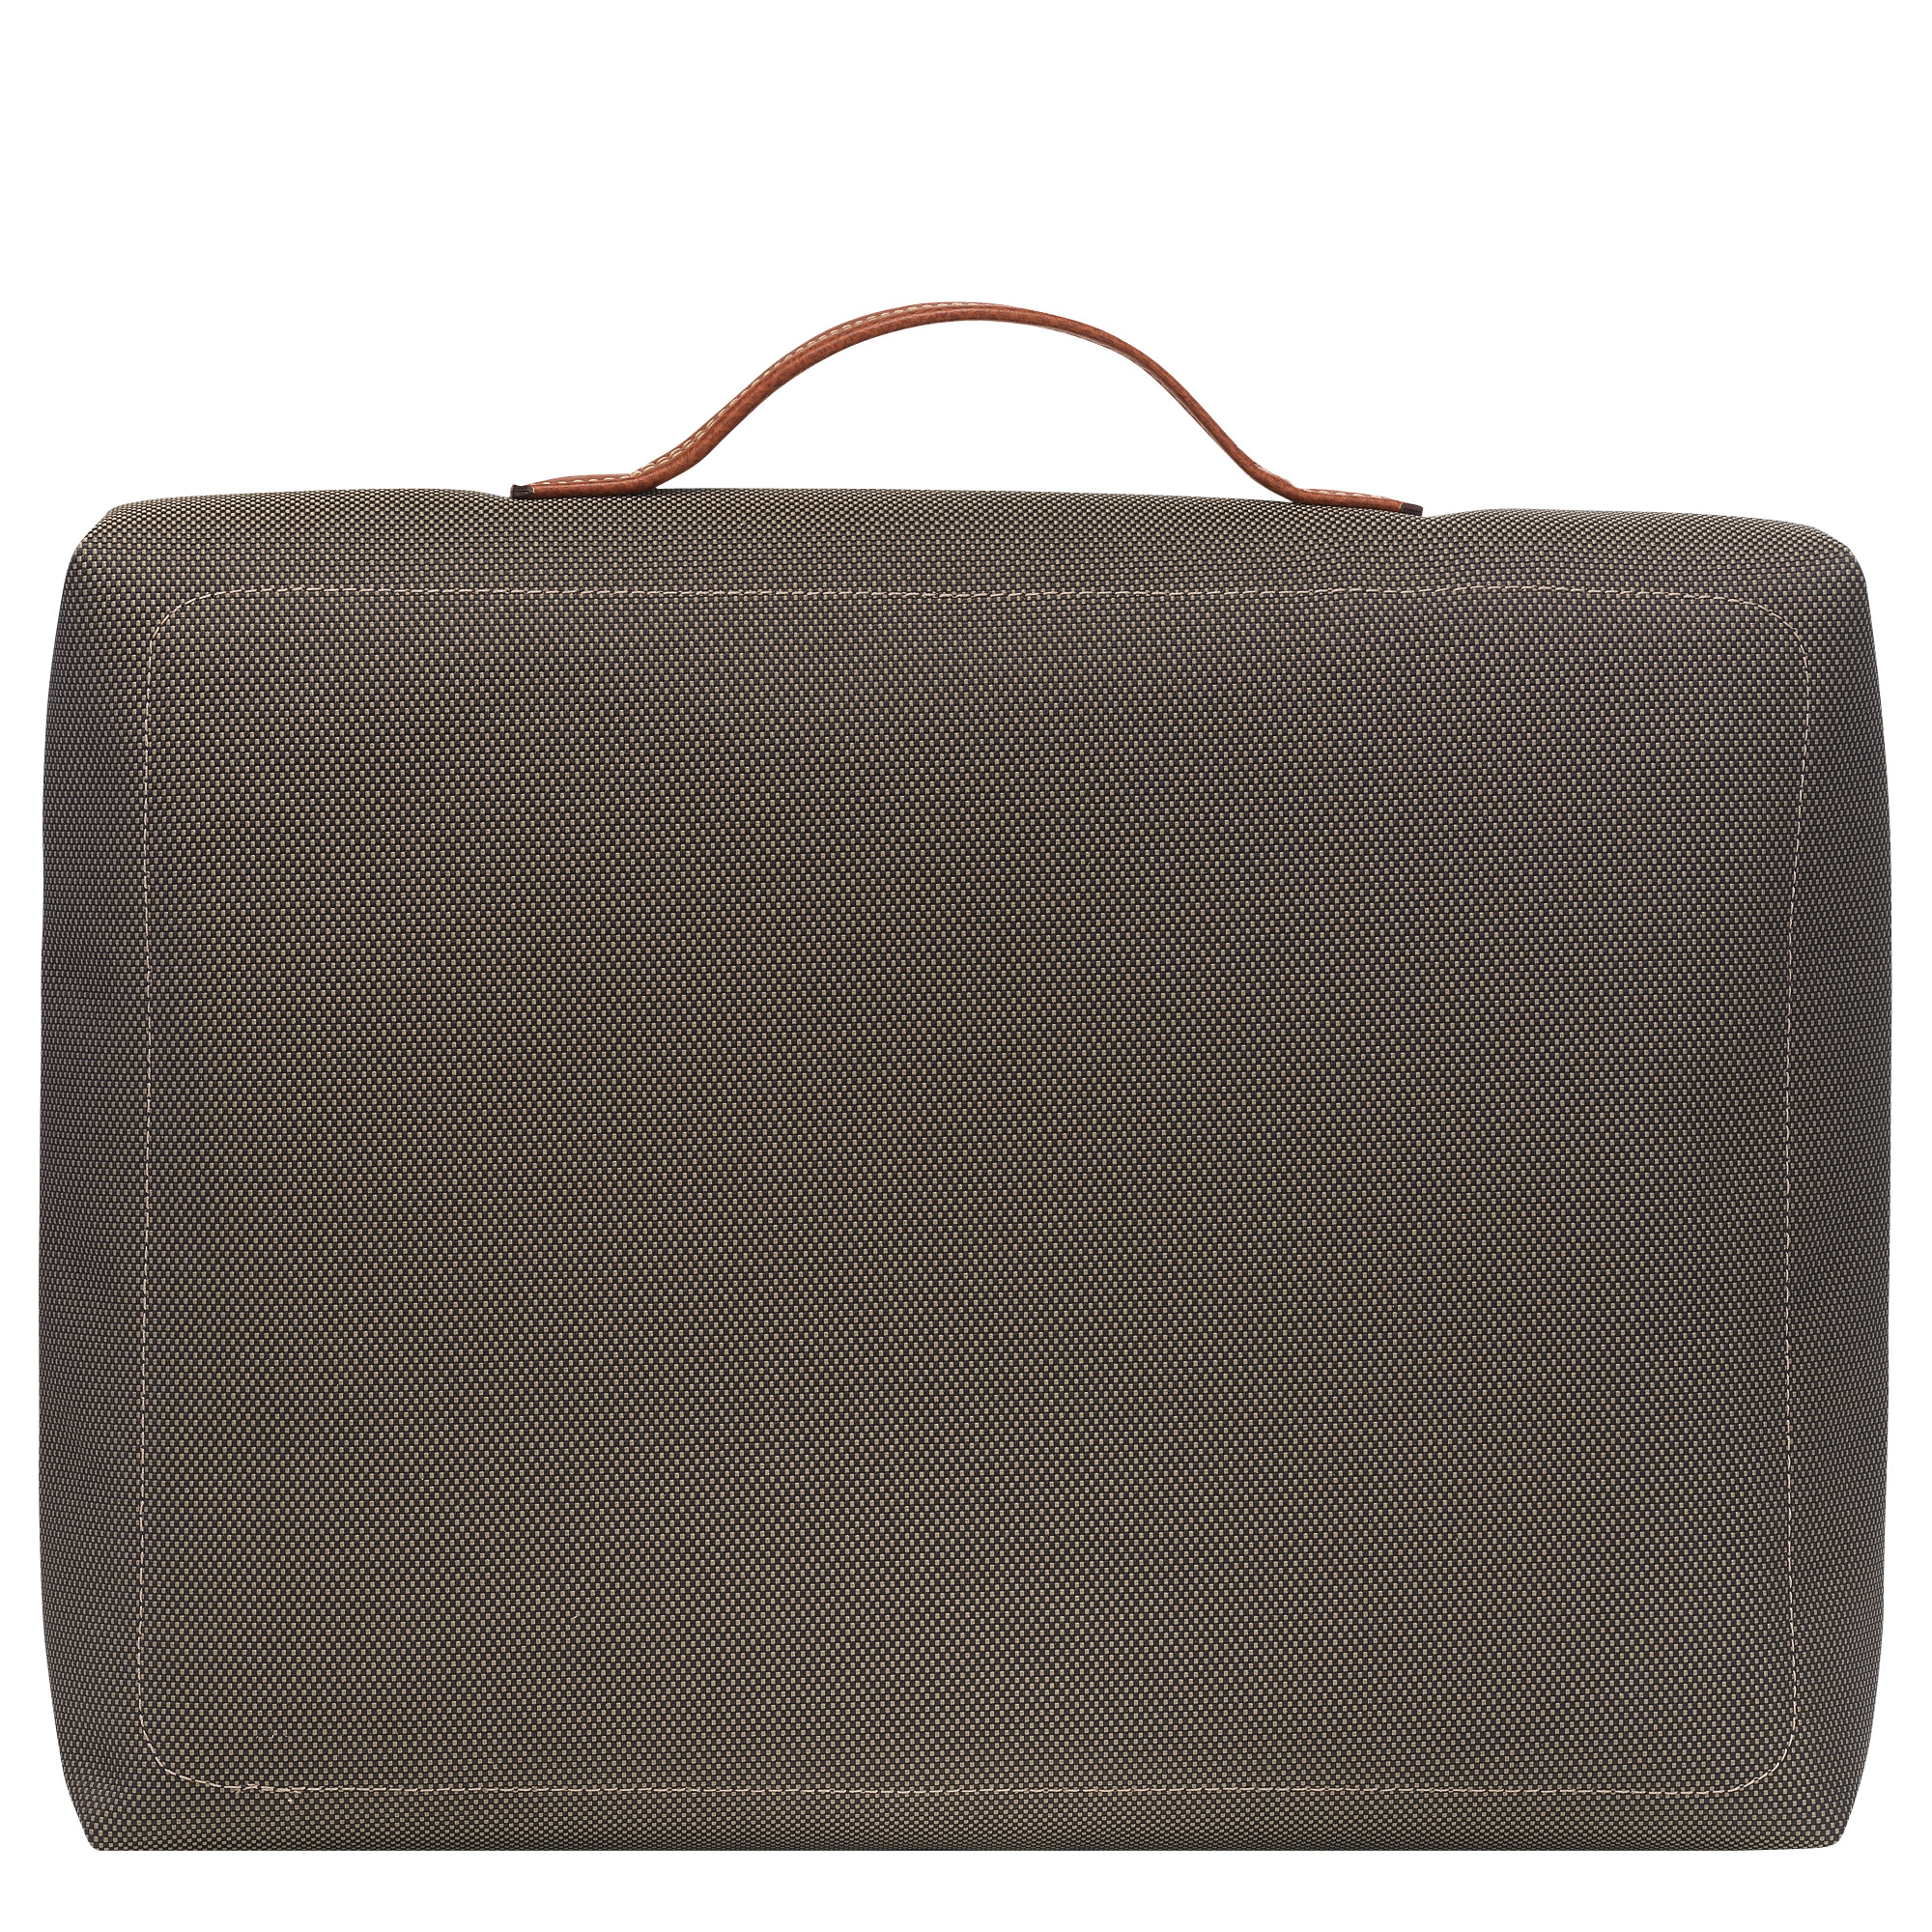 Boxford S Briefcase Brown - Canvas - 4